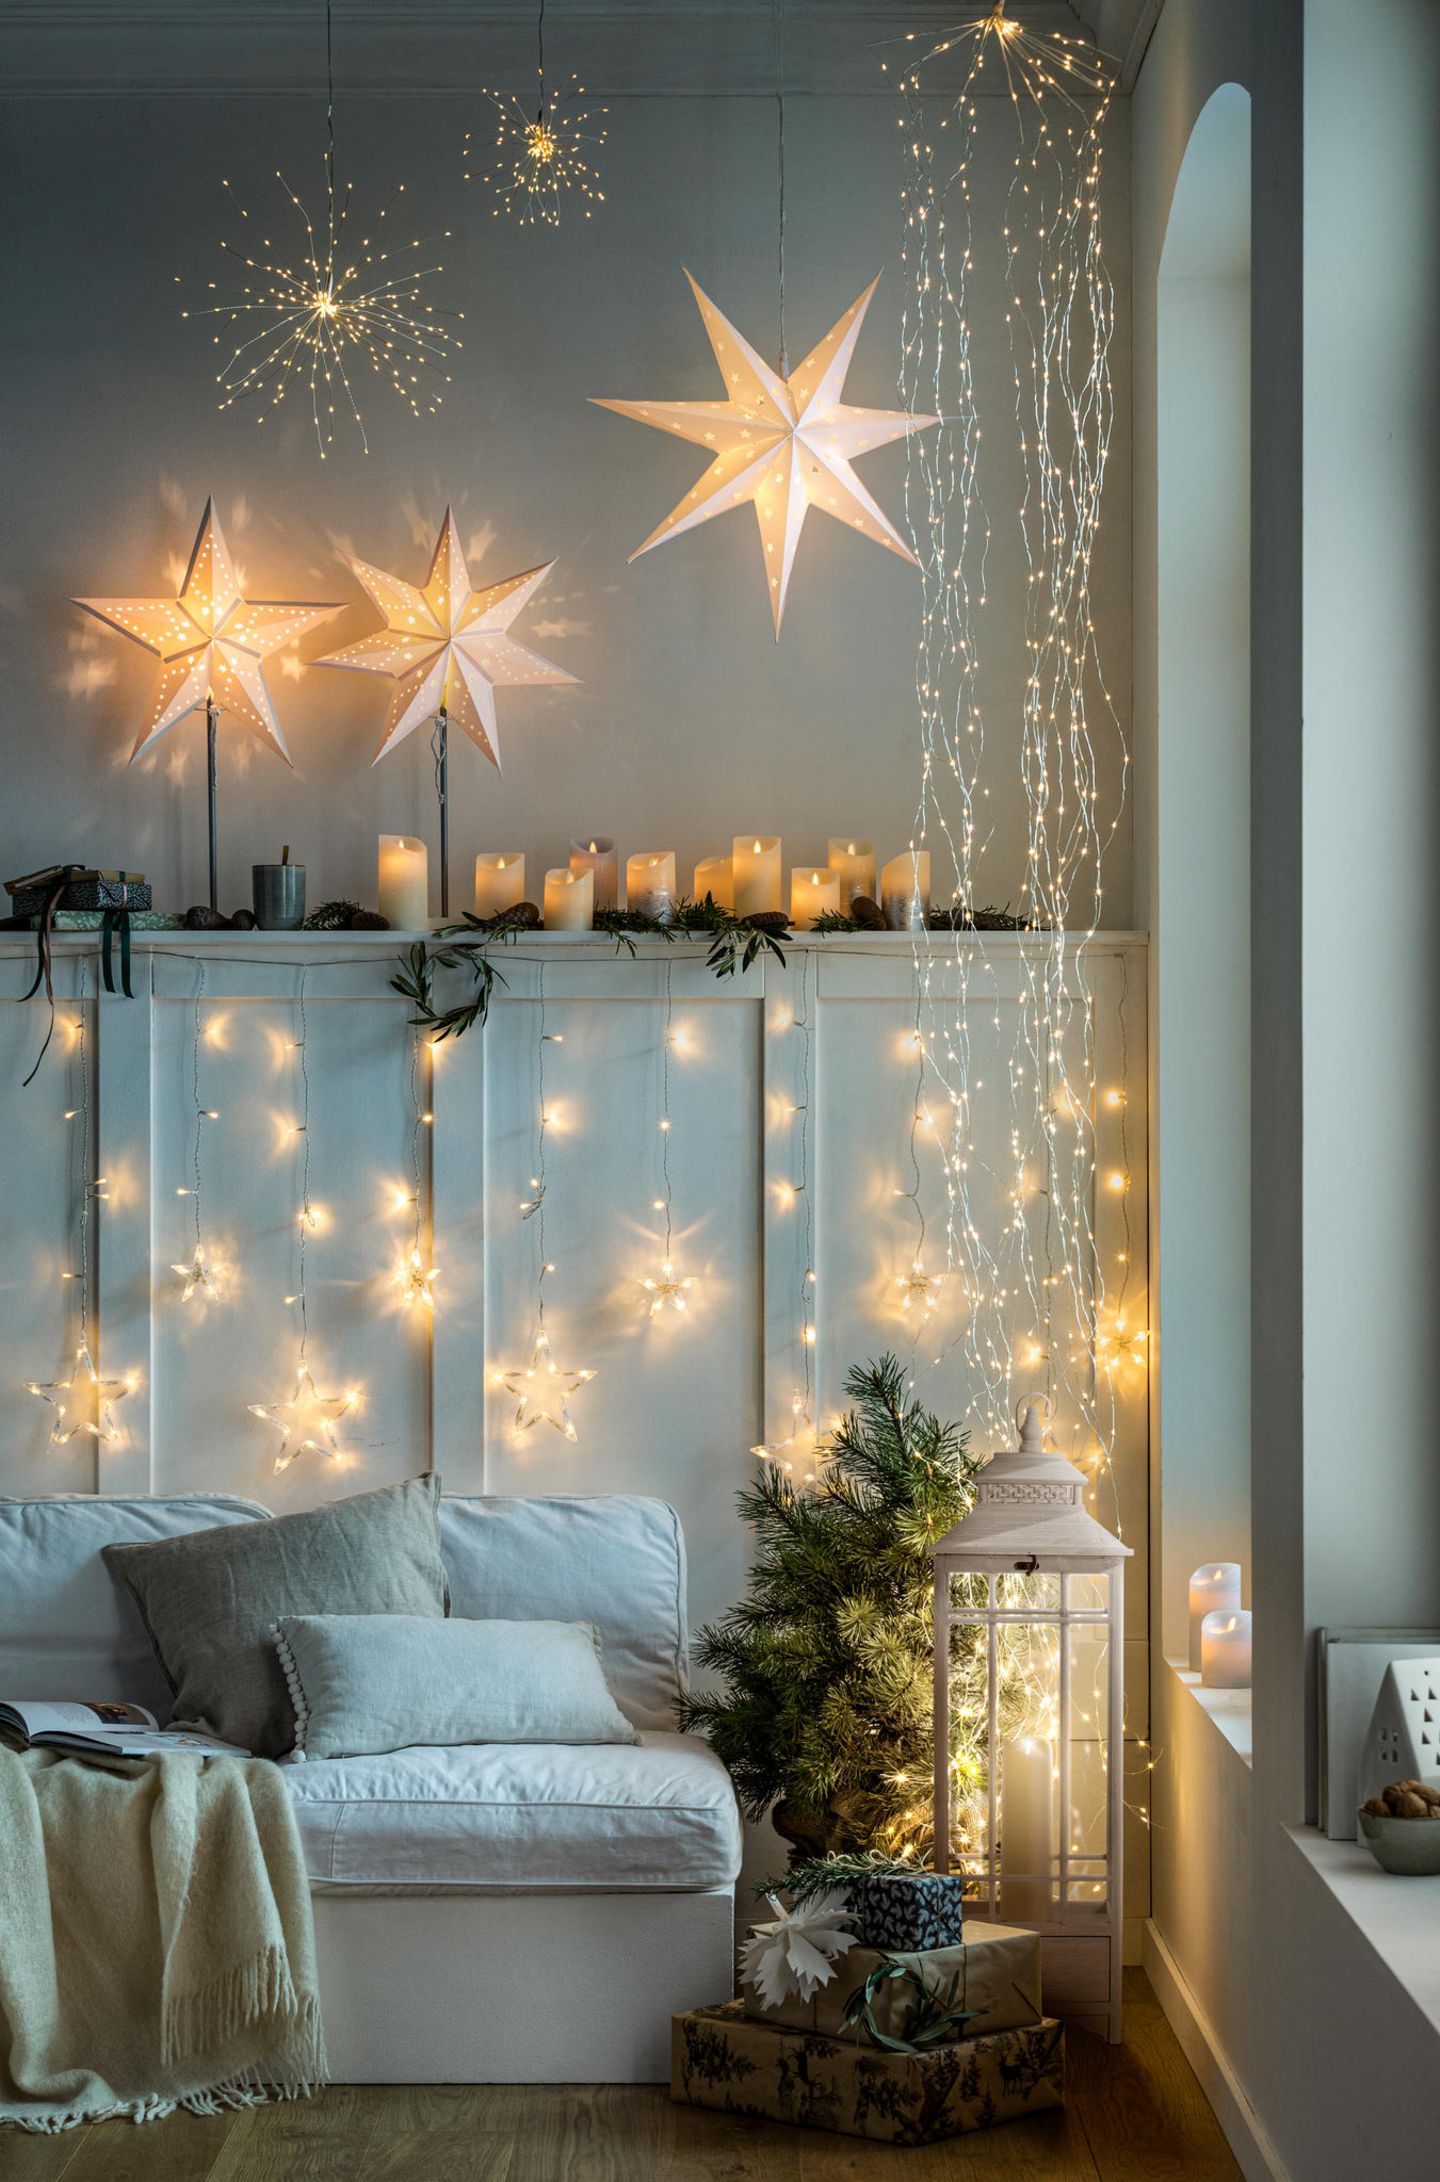 Lichterketten an den Wänden und leuchtende Sterne, die von der Decke hängen, in einem Wohnzimmer mit Sofa und kleiner Tanne